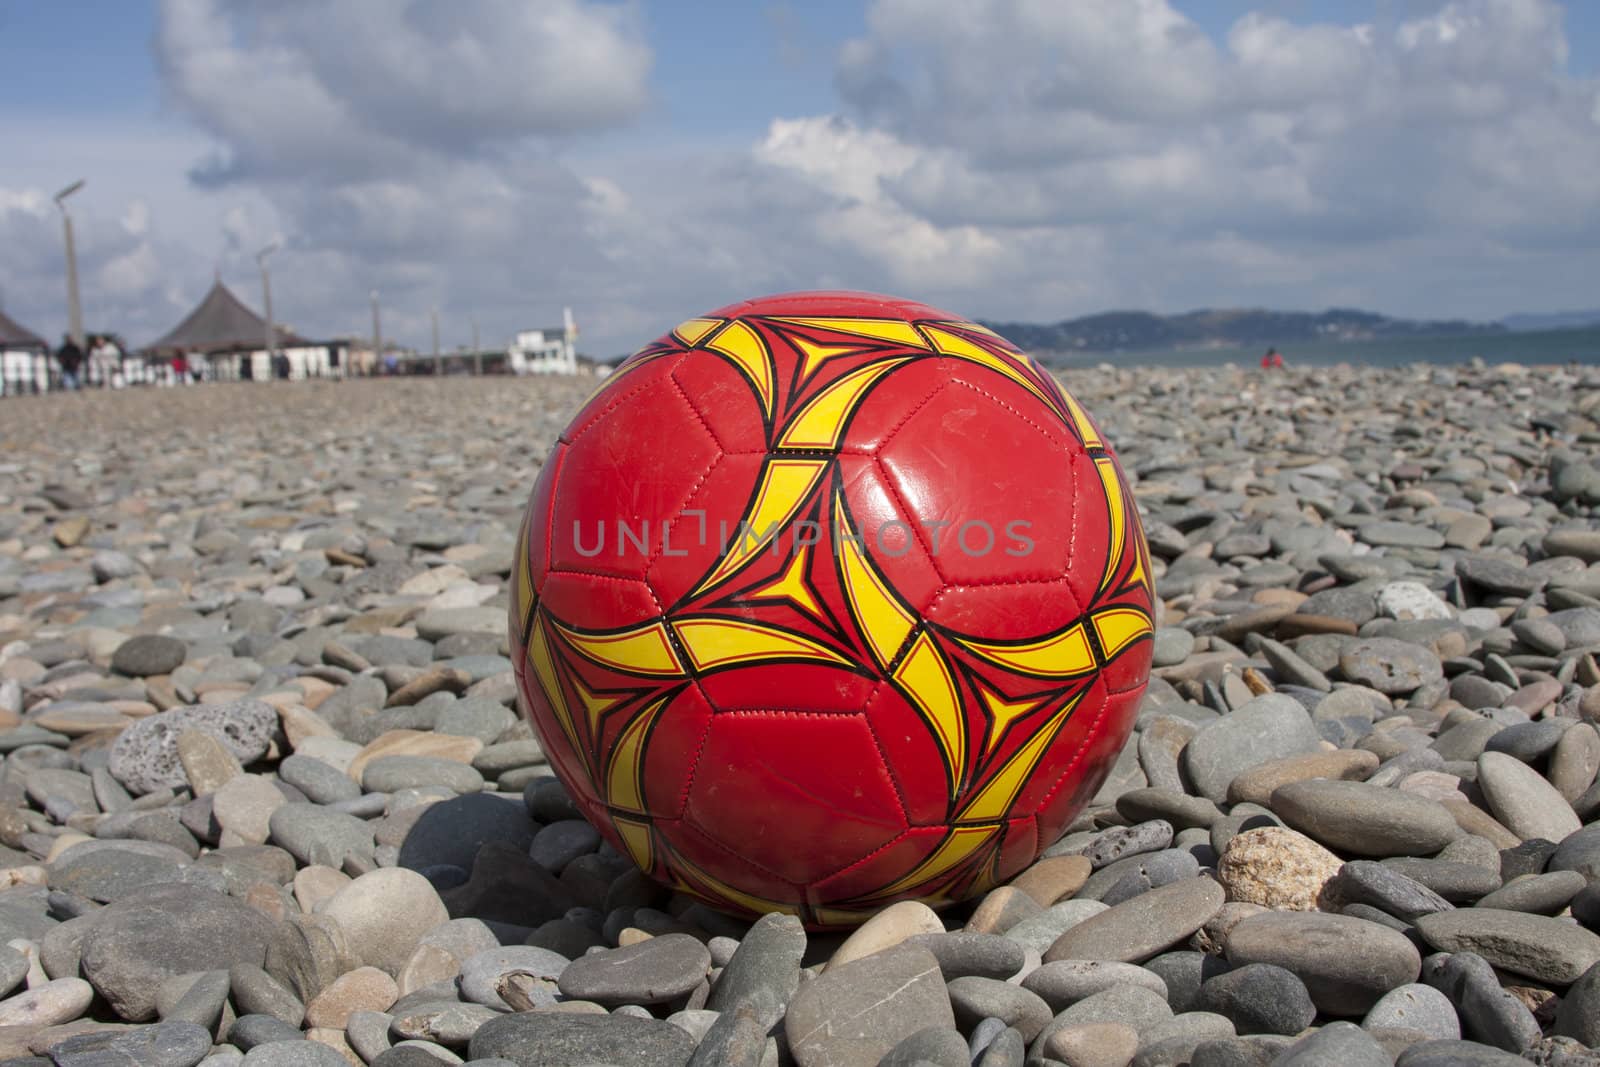 A football on a stony beach